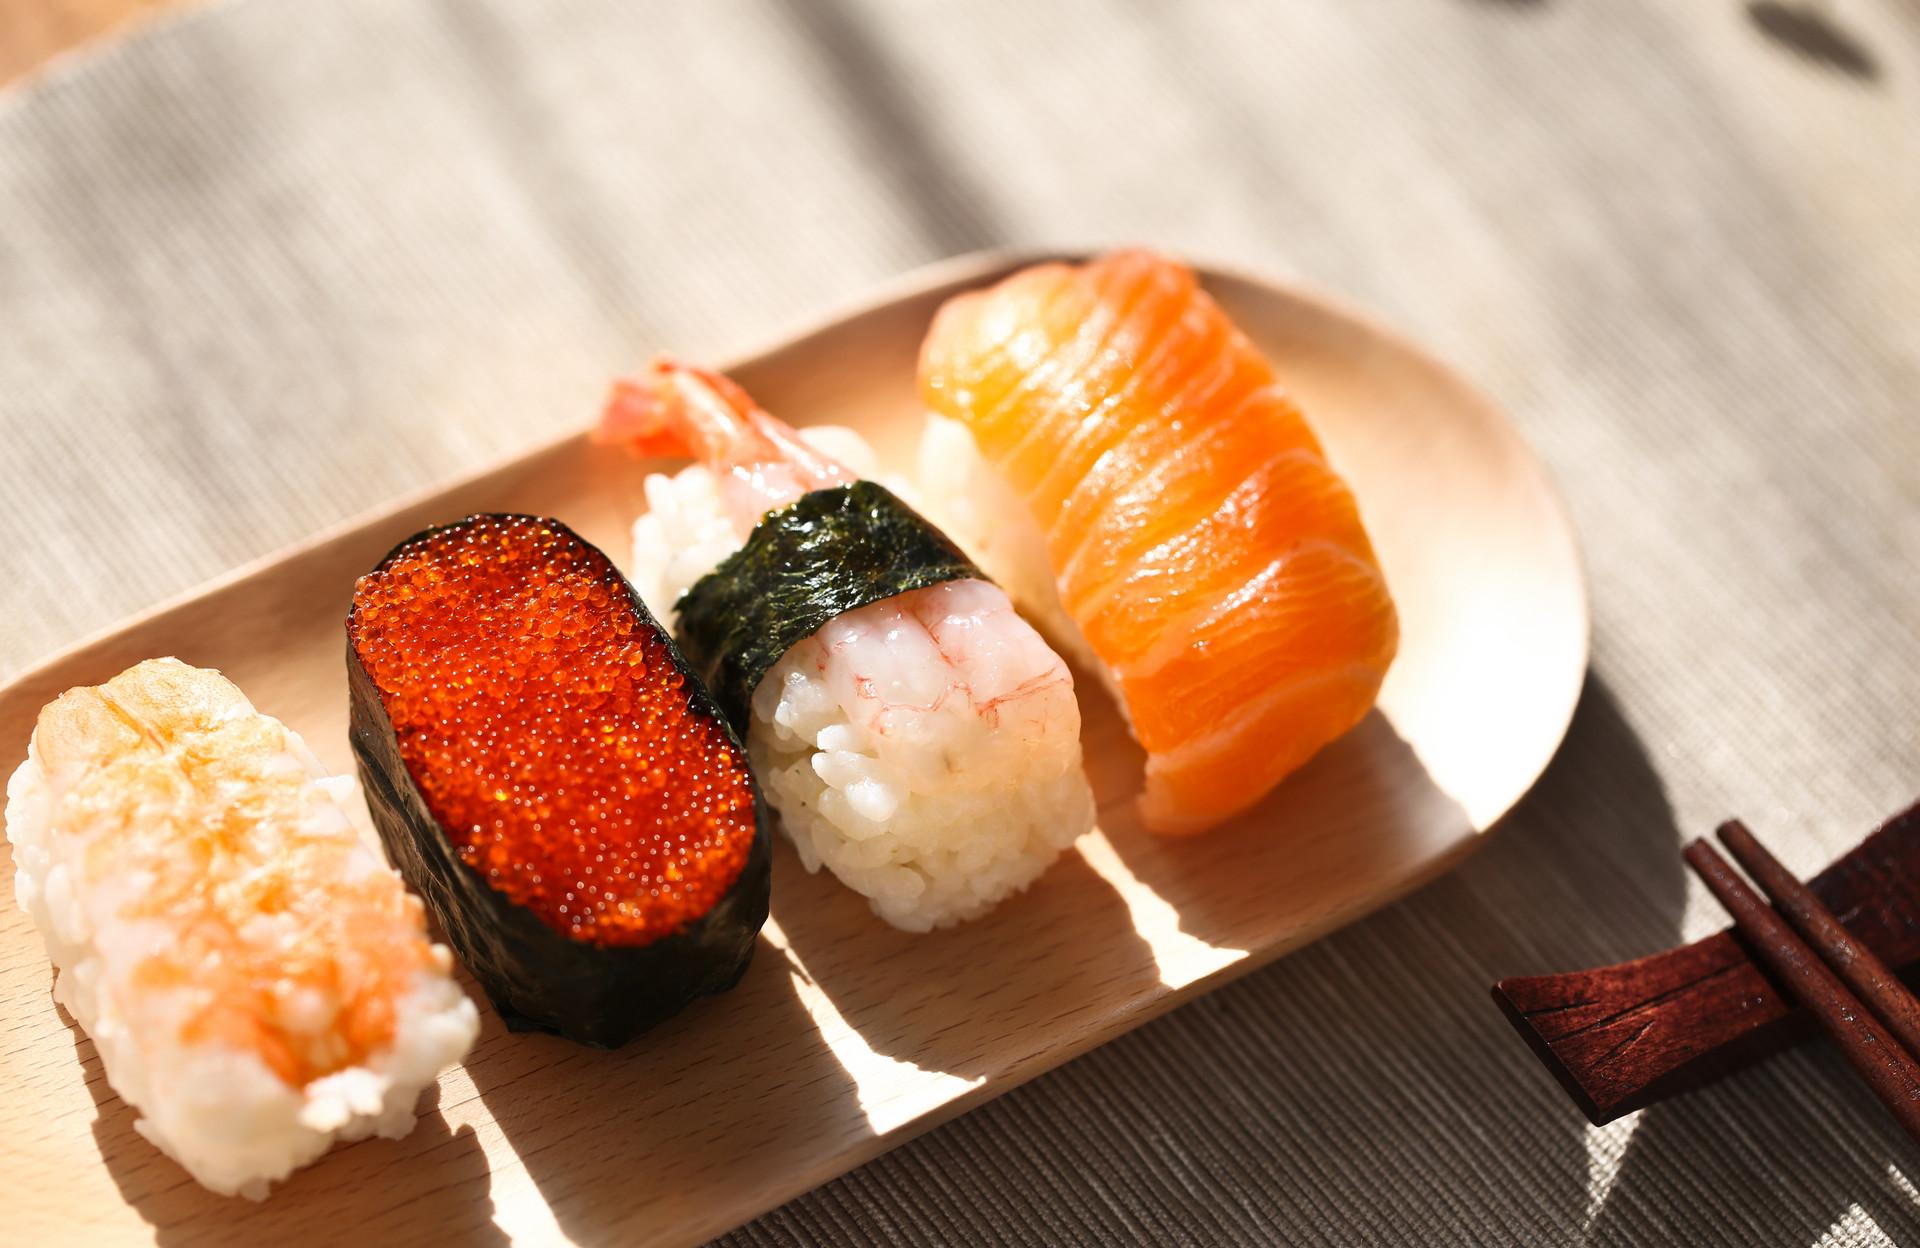 寿司上面的橙色颗粒是什么